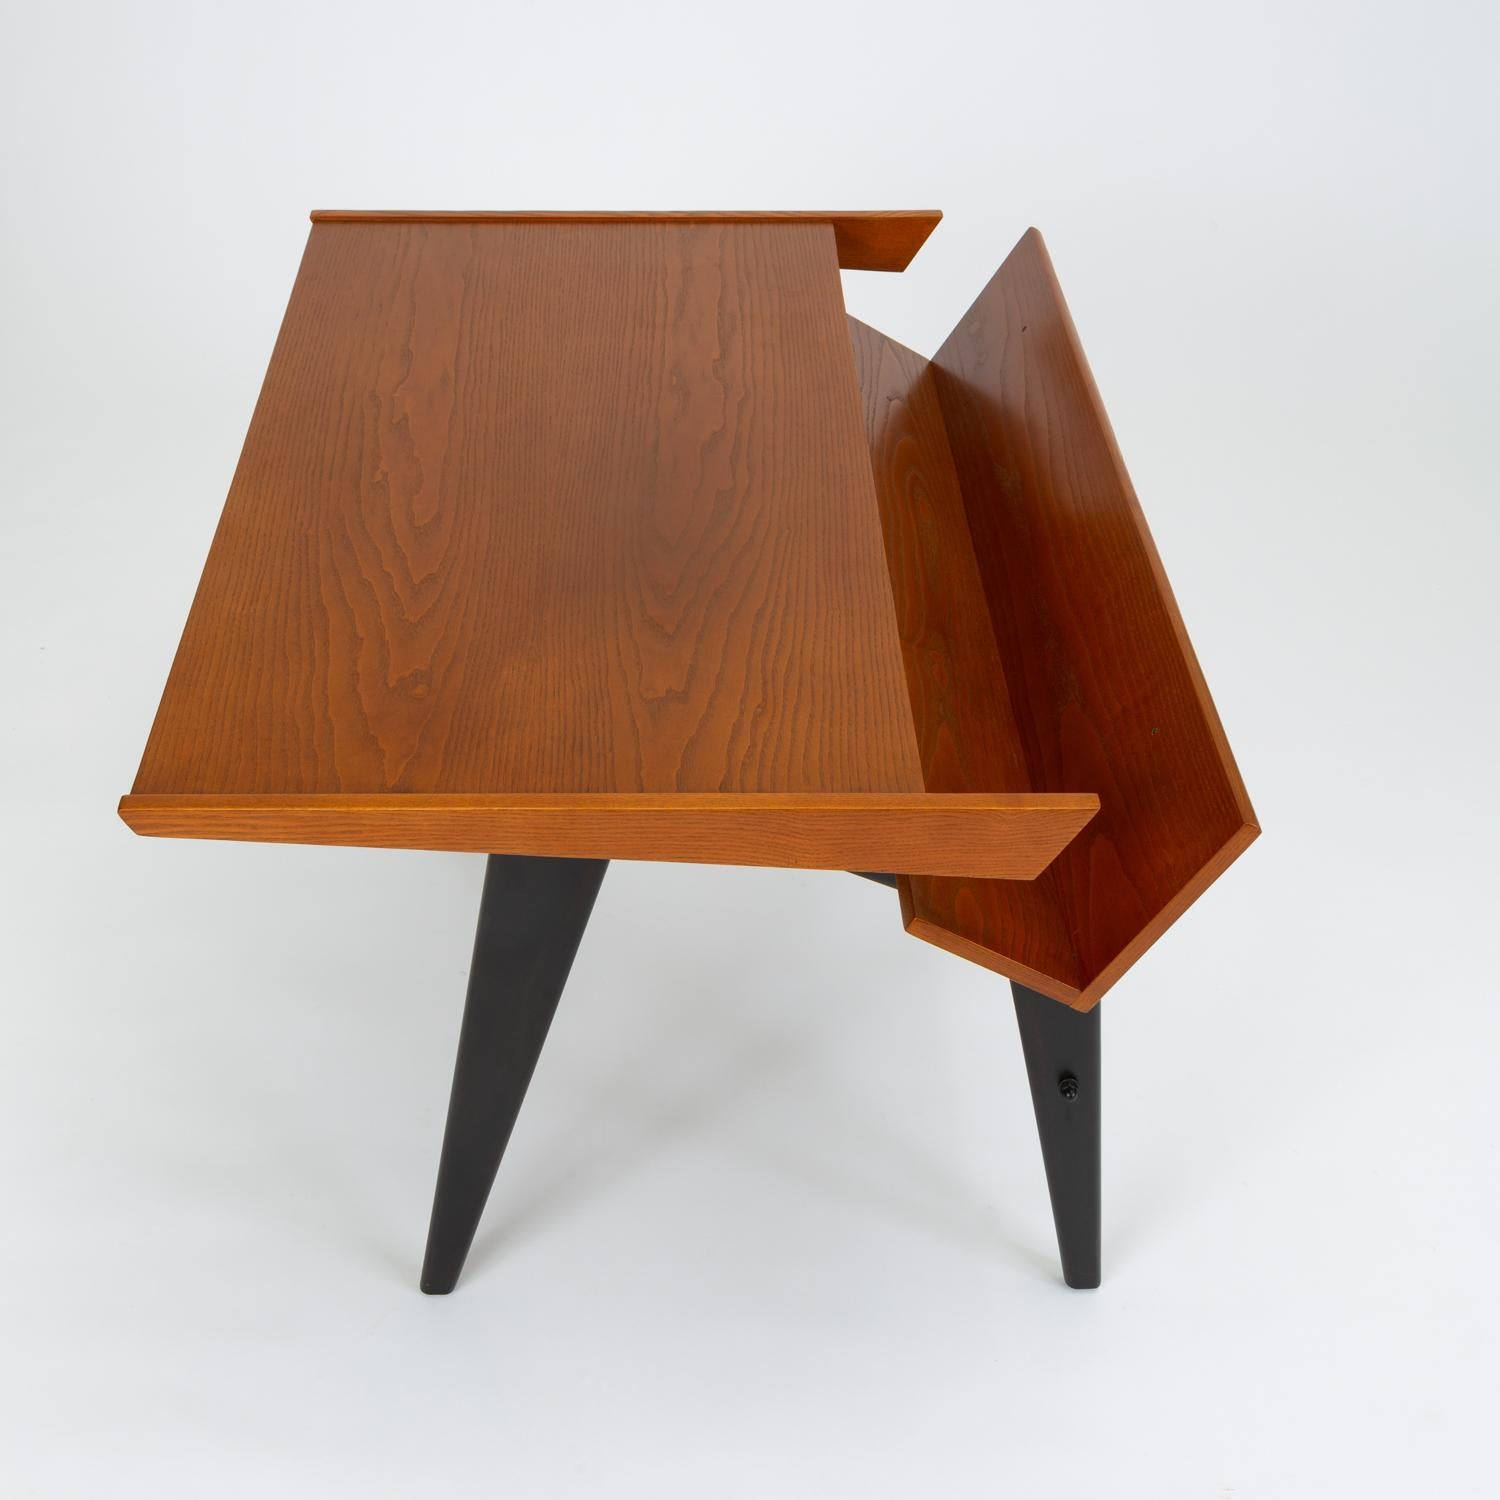 German Oak Desk with Integrated Shelf and Ebonized Legs by Hartmut Lohmeyer